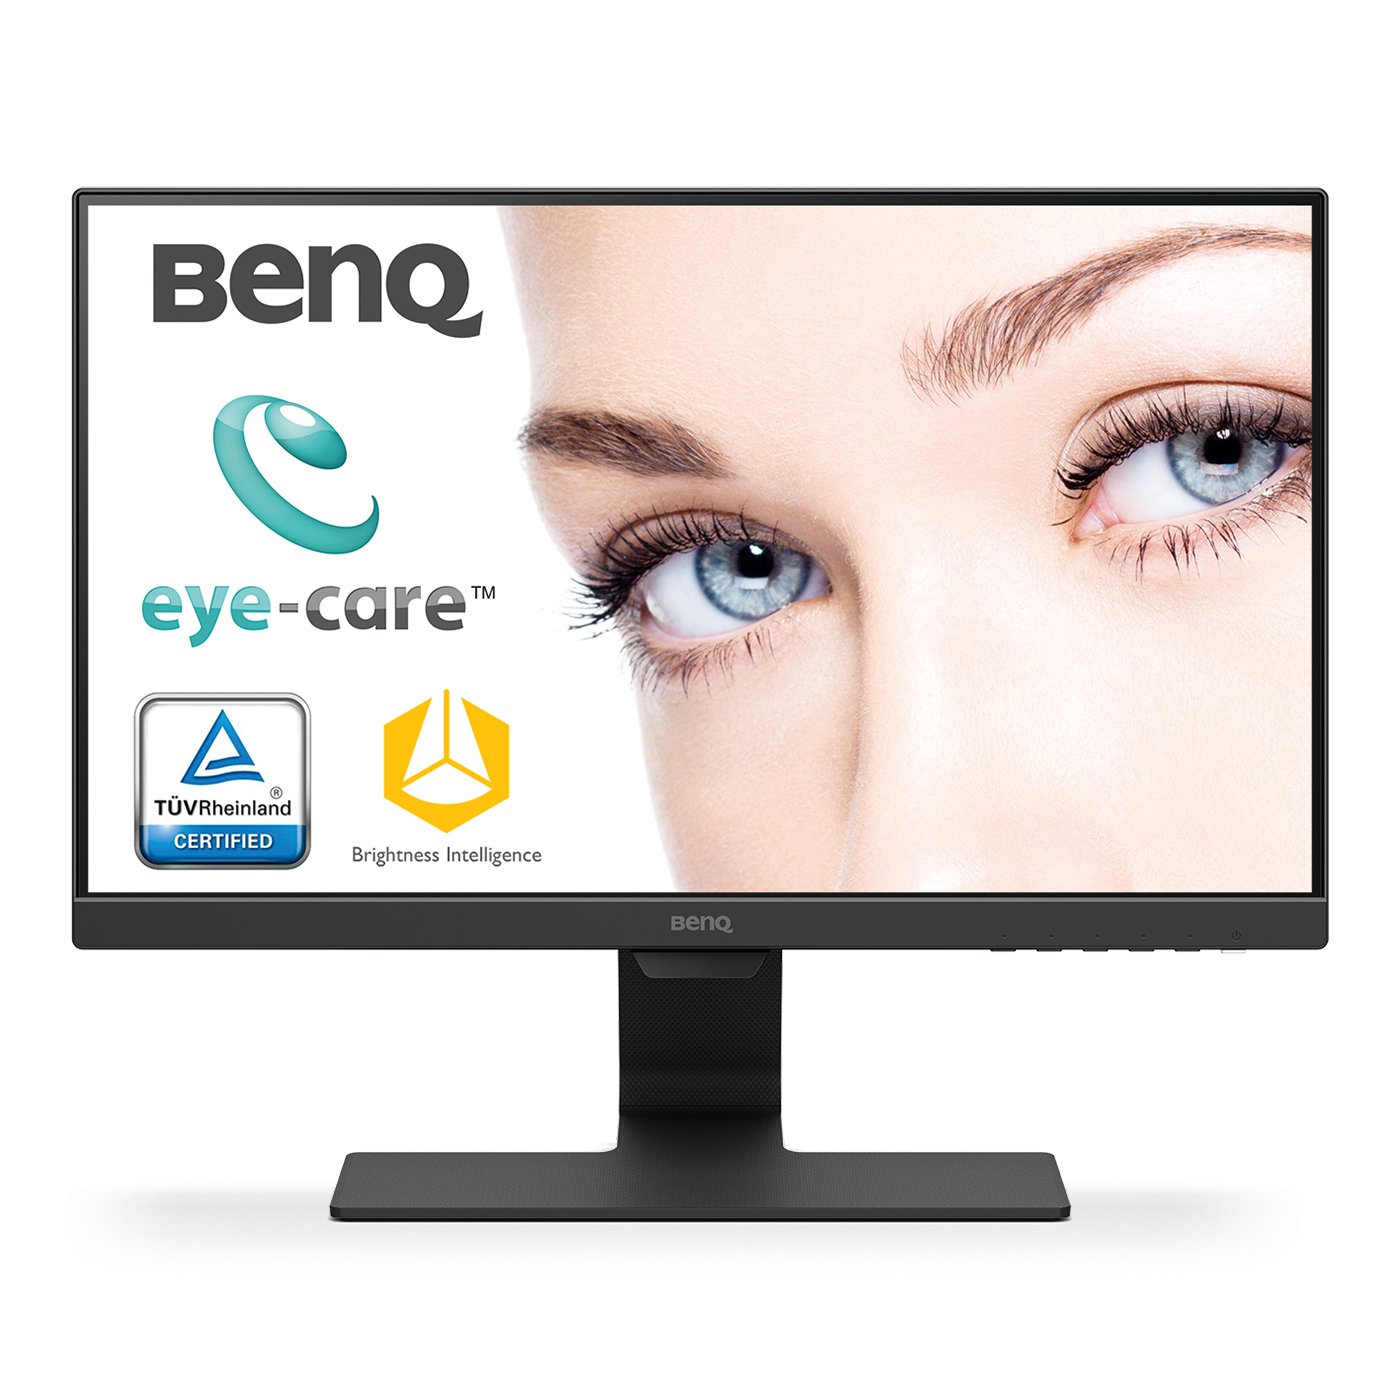 GW2283 Product Info | BenQ Europe